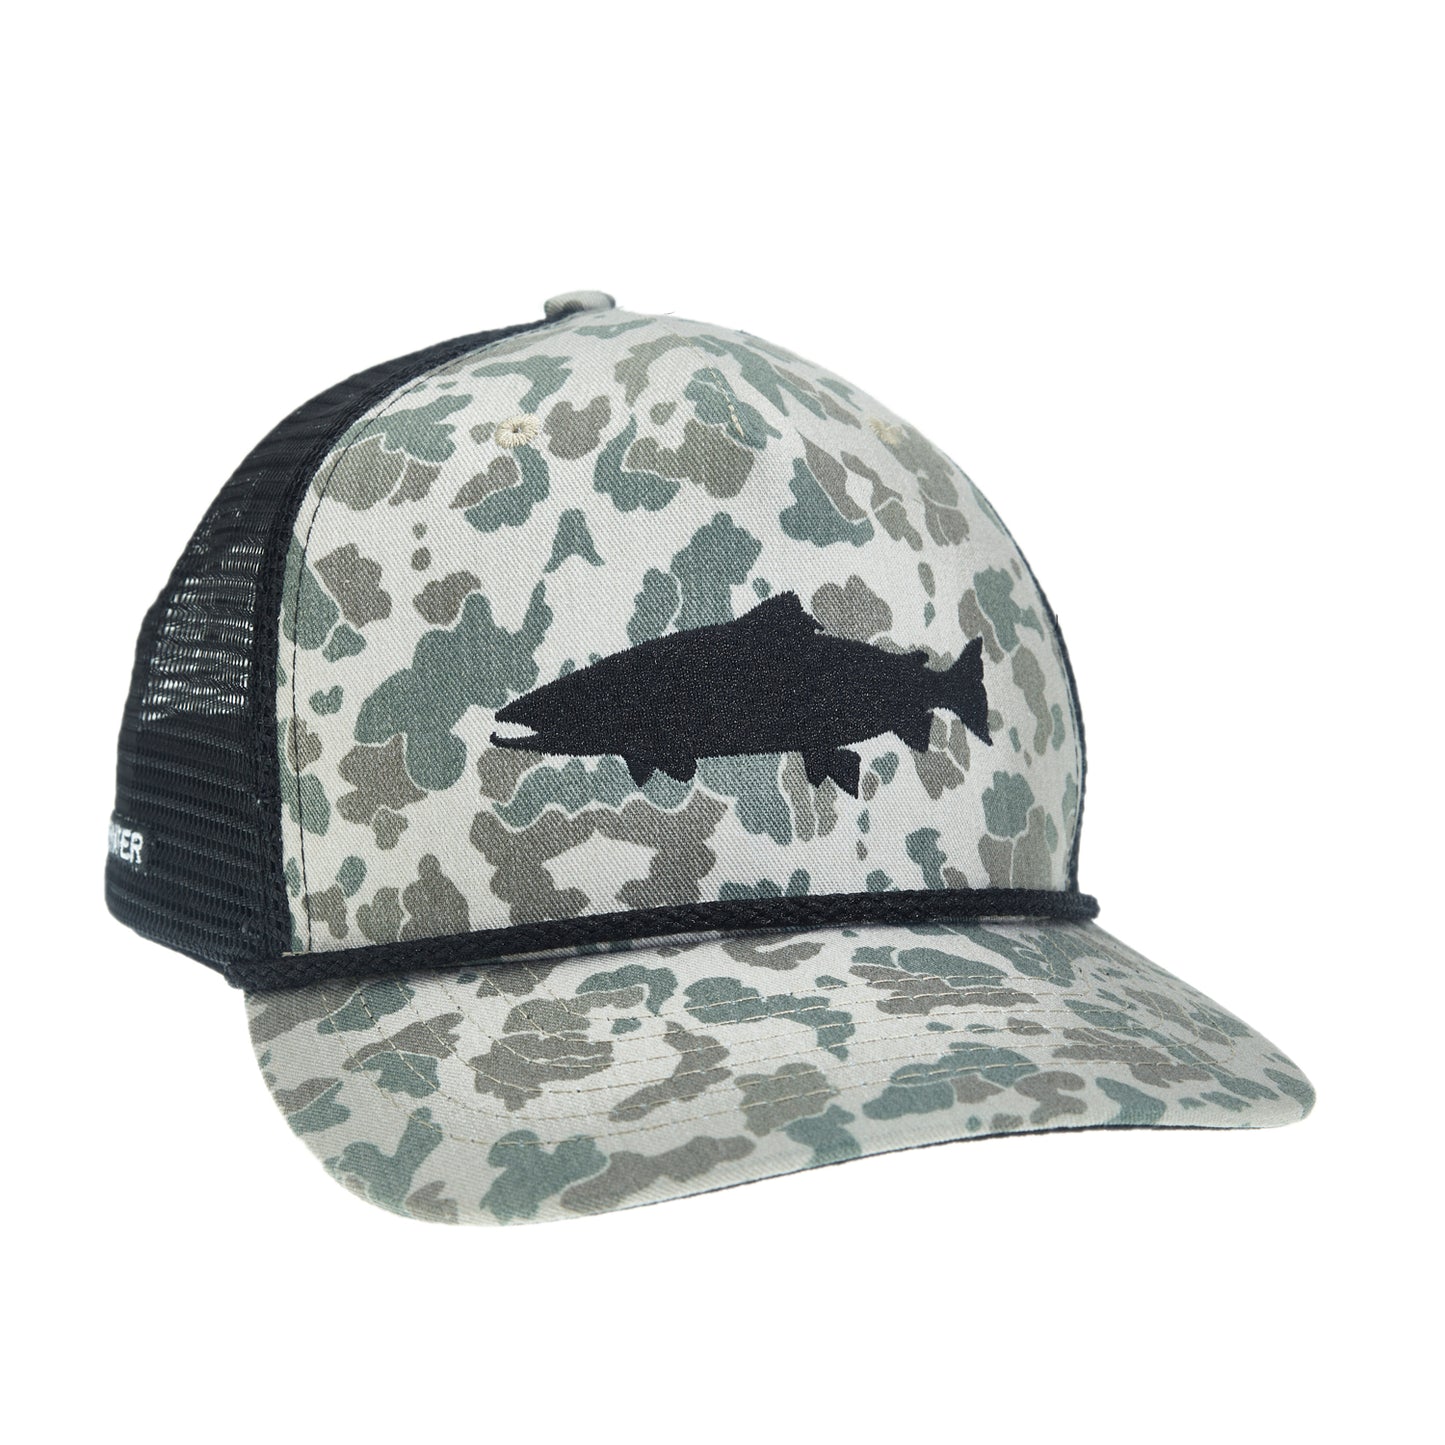 Men's Camo Fishing Caps, Pike Fishing Baseball Hat